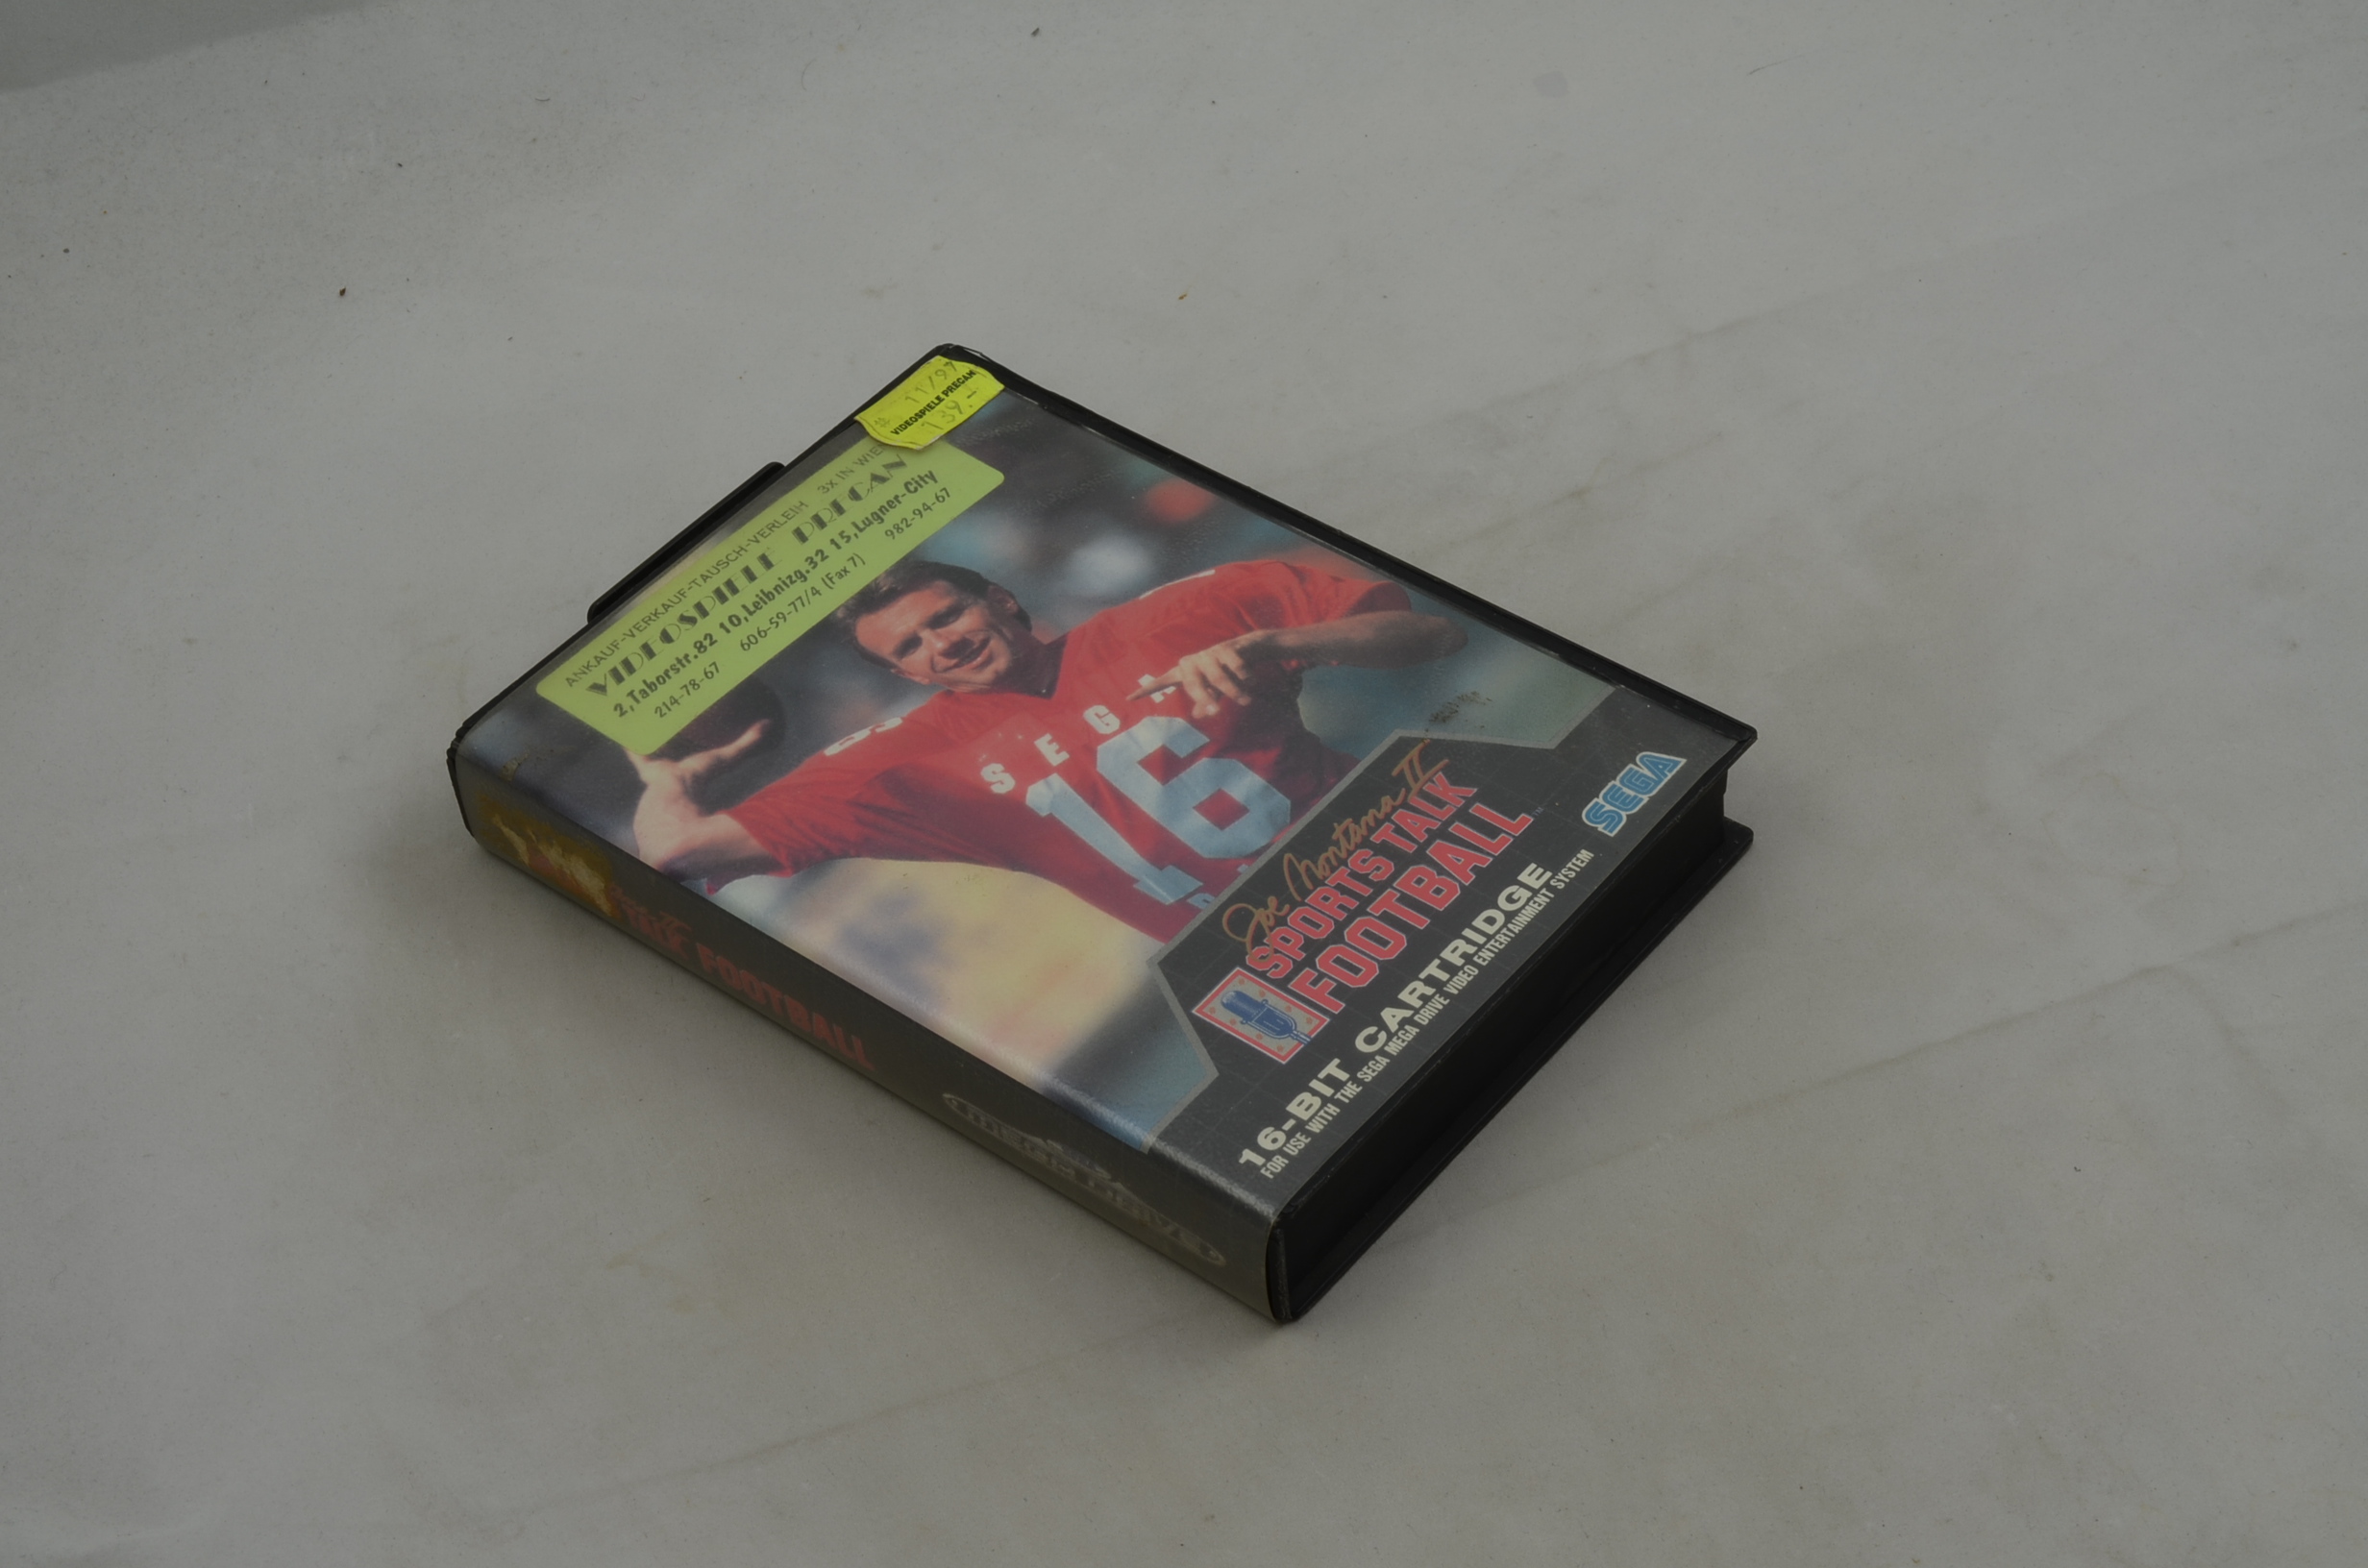 Produktbild von Joe Montana II Sports Talk Football Sega Mega Drive Spiel CIB (gut)